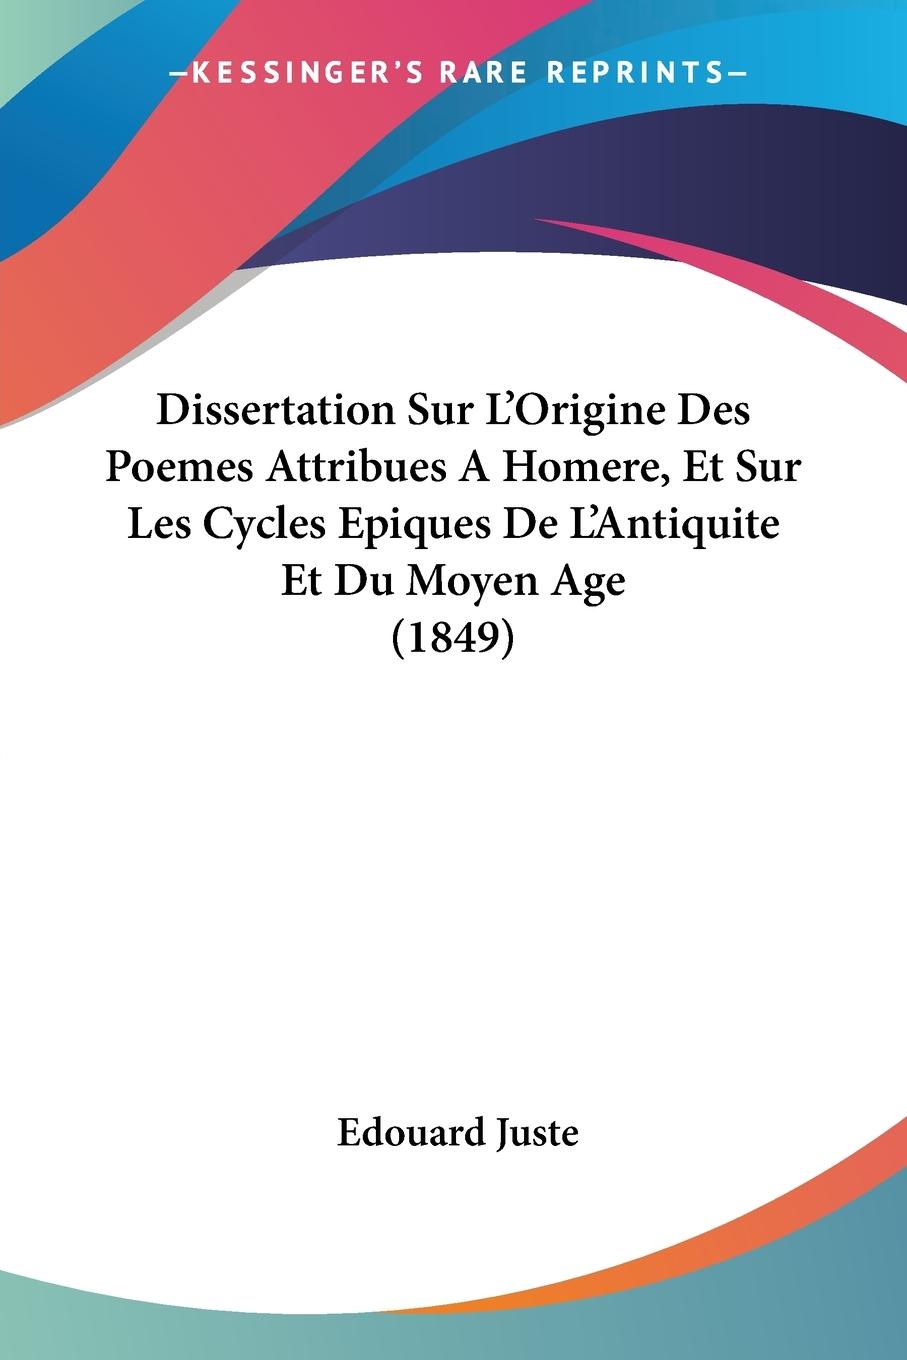 Dissertation Sur L Origine Des Poemes Attribues A Homere, Et Sur Les Cycles Epiques De L Antiquite Et Du Moyen Age (1849) - Juste, Edouard